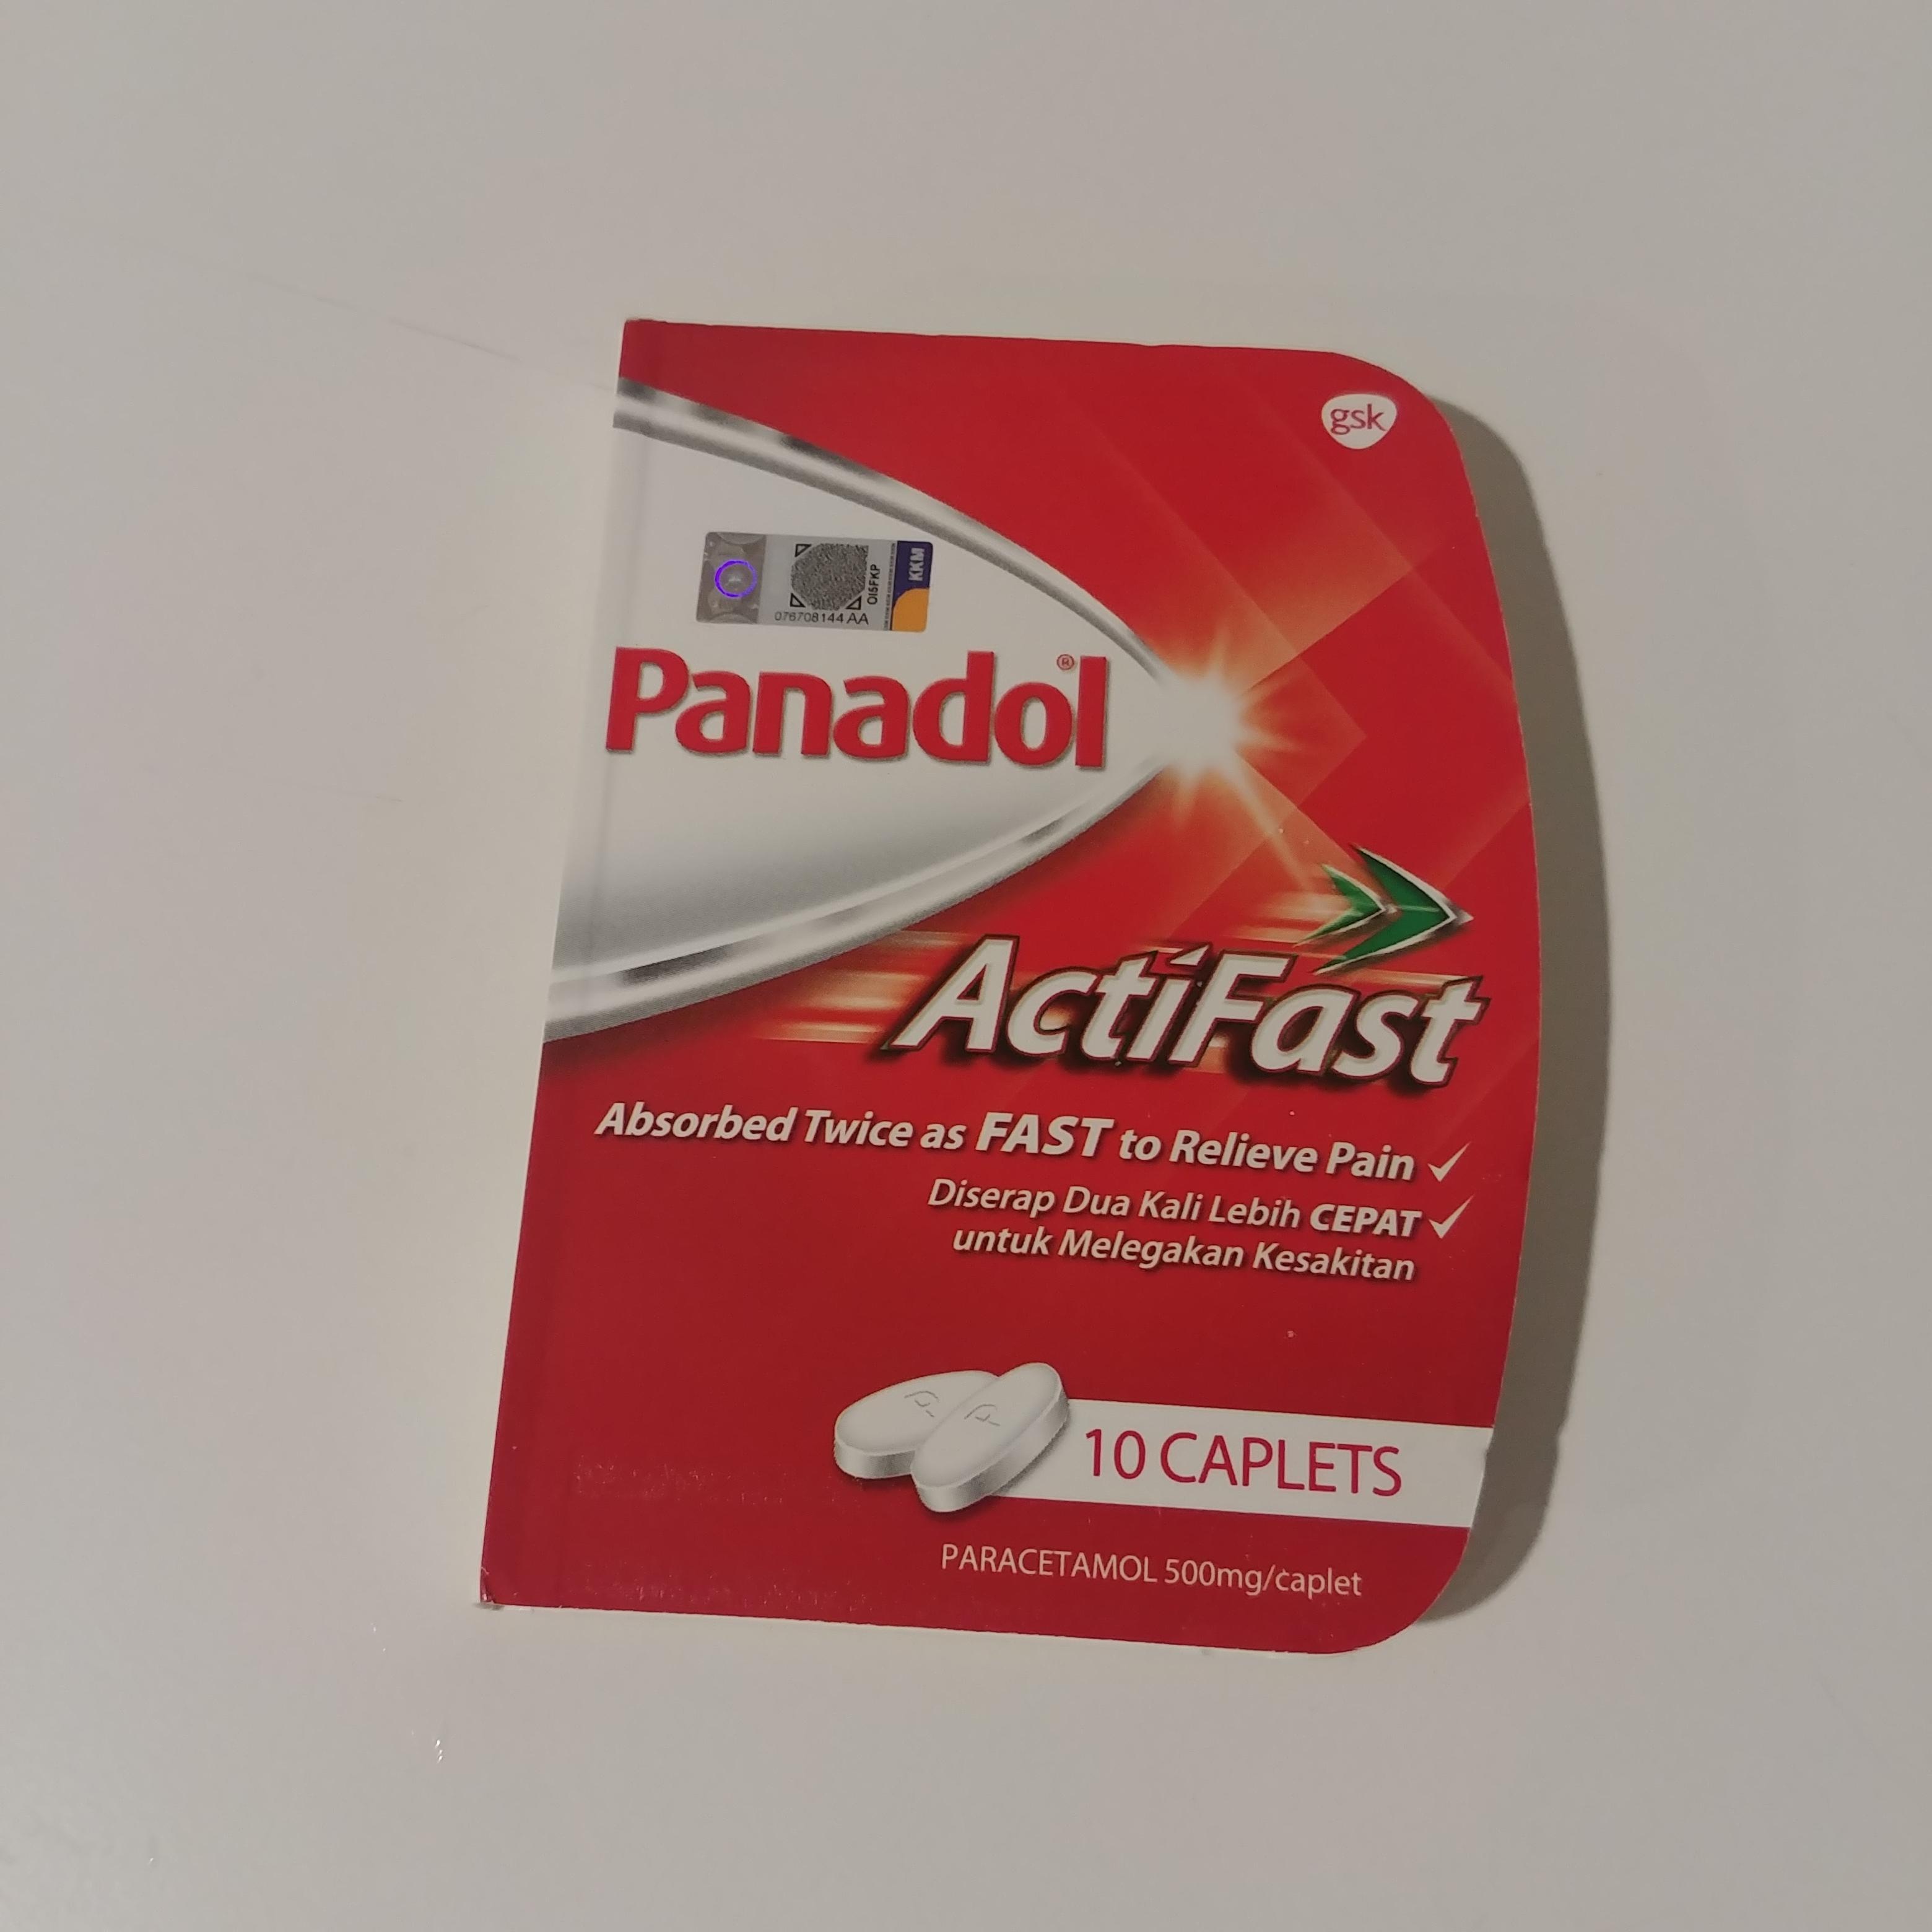 말레이시아 여행 물갈이에 효과적인 약 Panadol Actifast